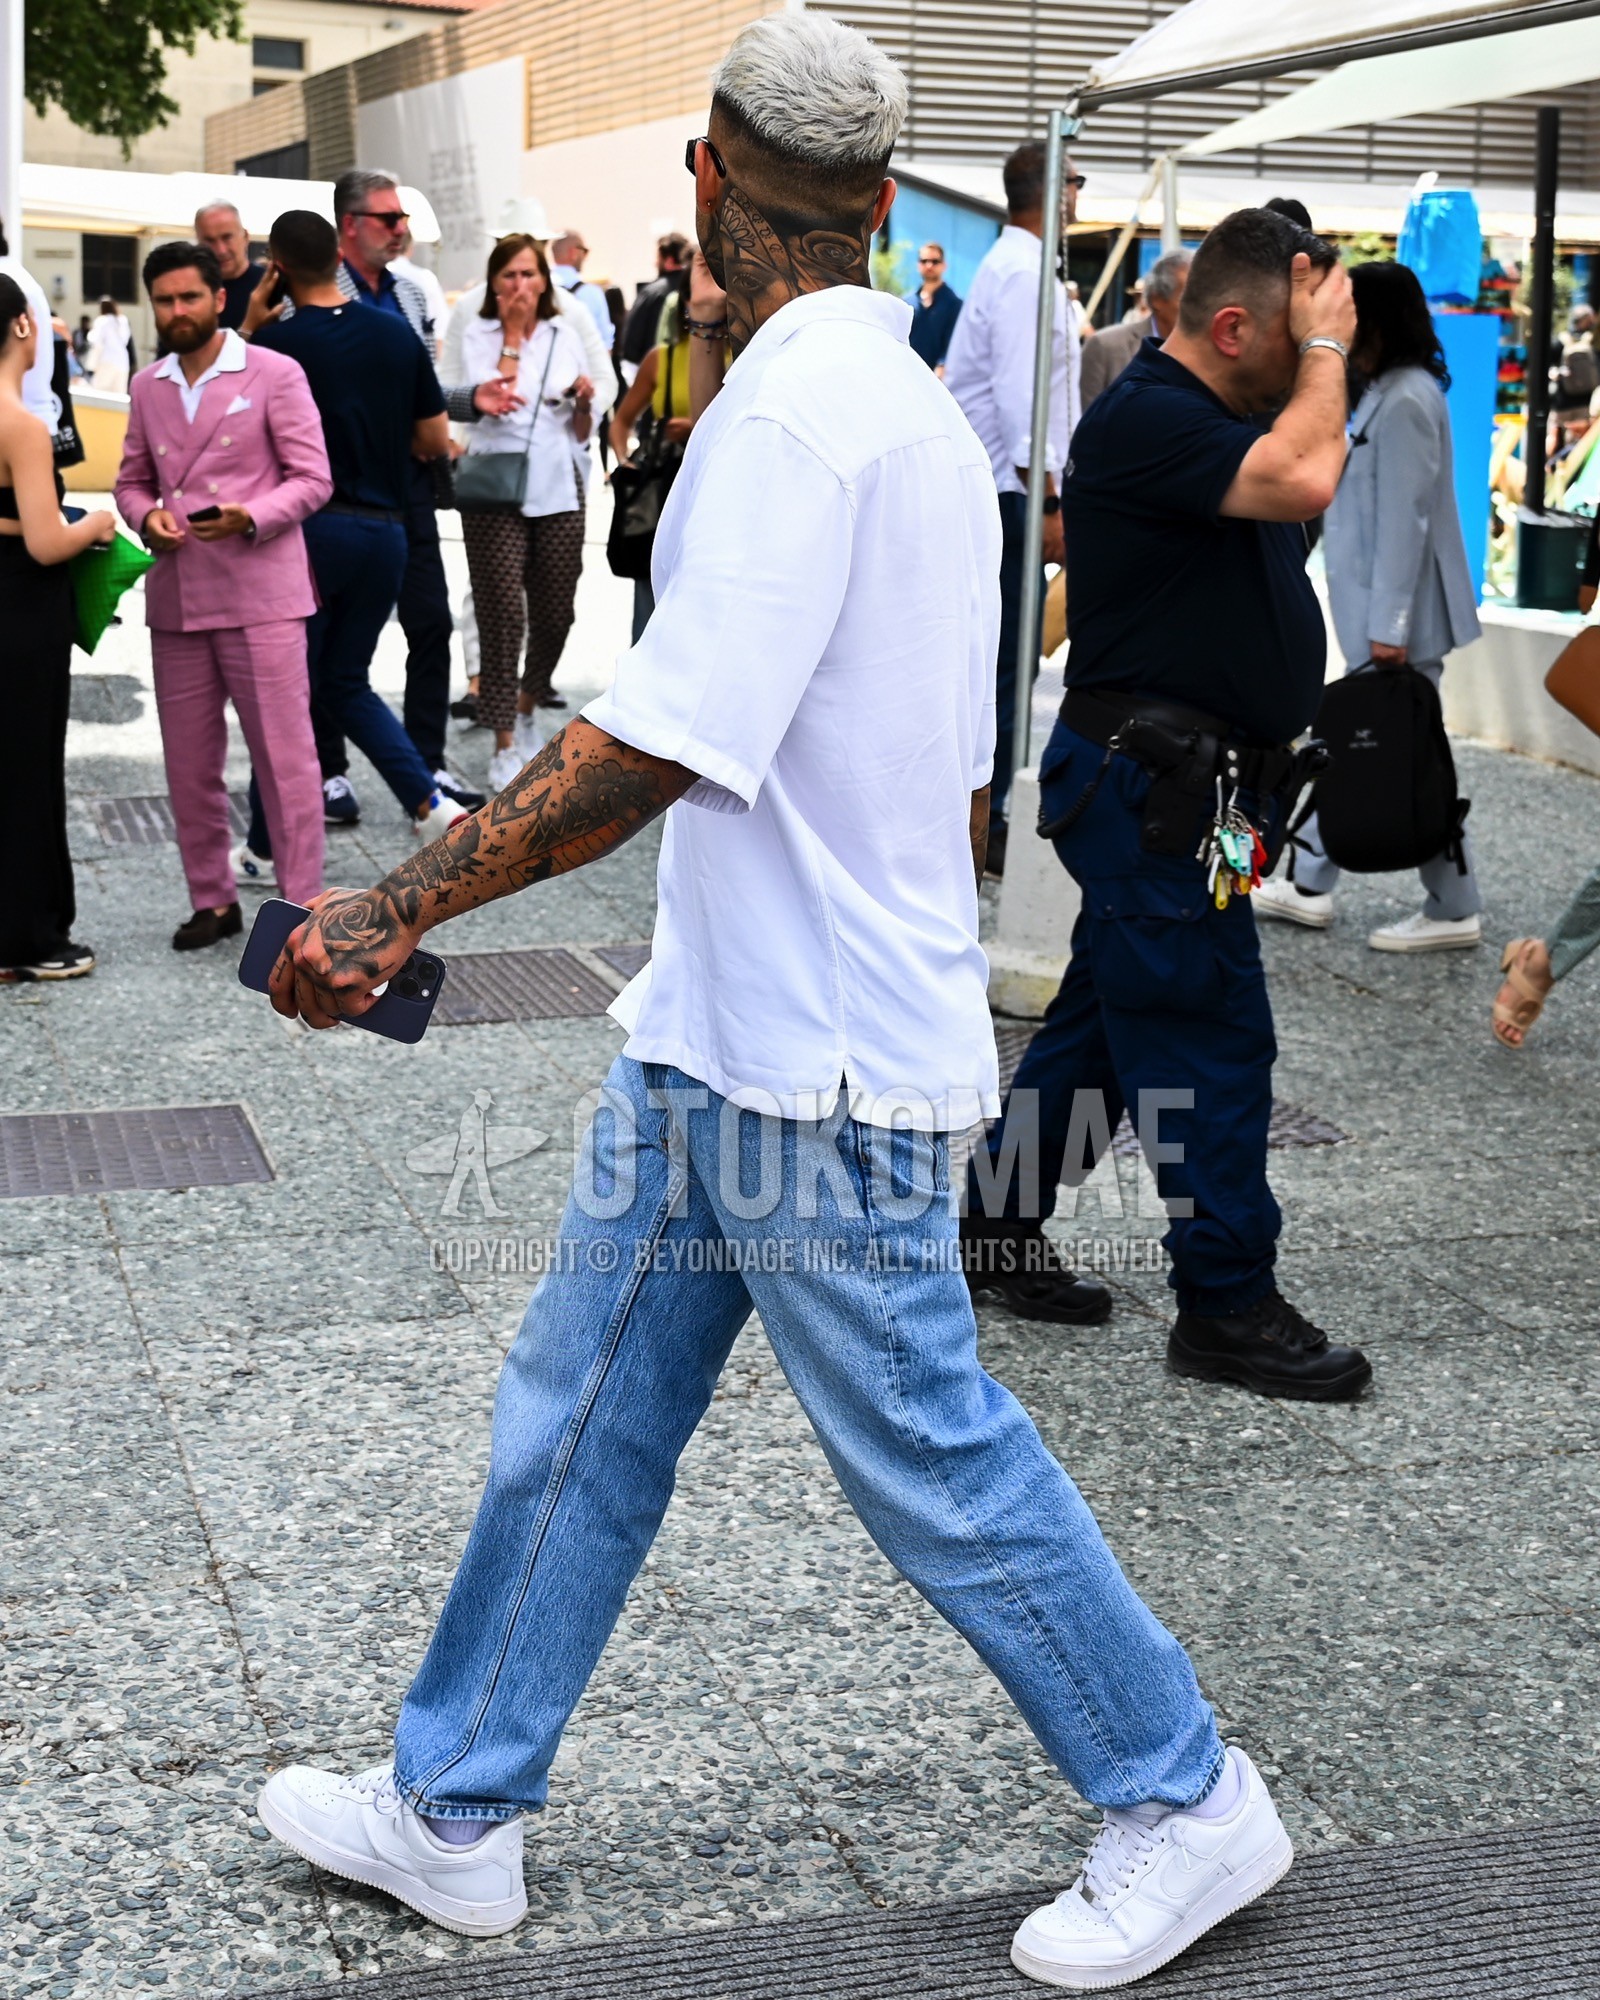 Men's spring summer outfit with white plain t-shirt, light blue plain denim/jeans, light blue low-cut sneakers.